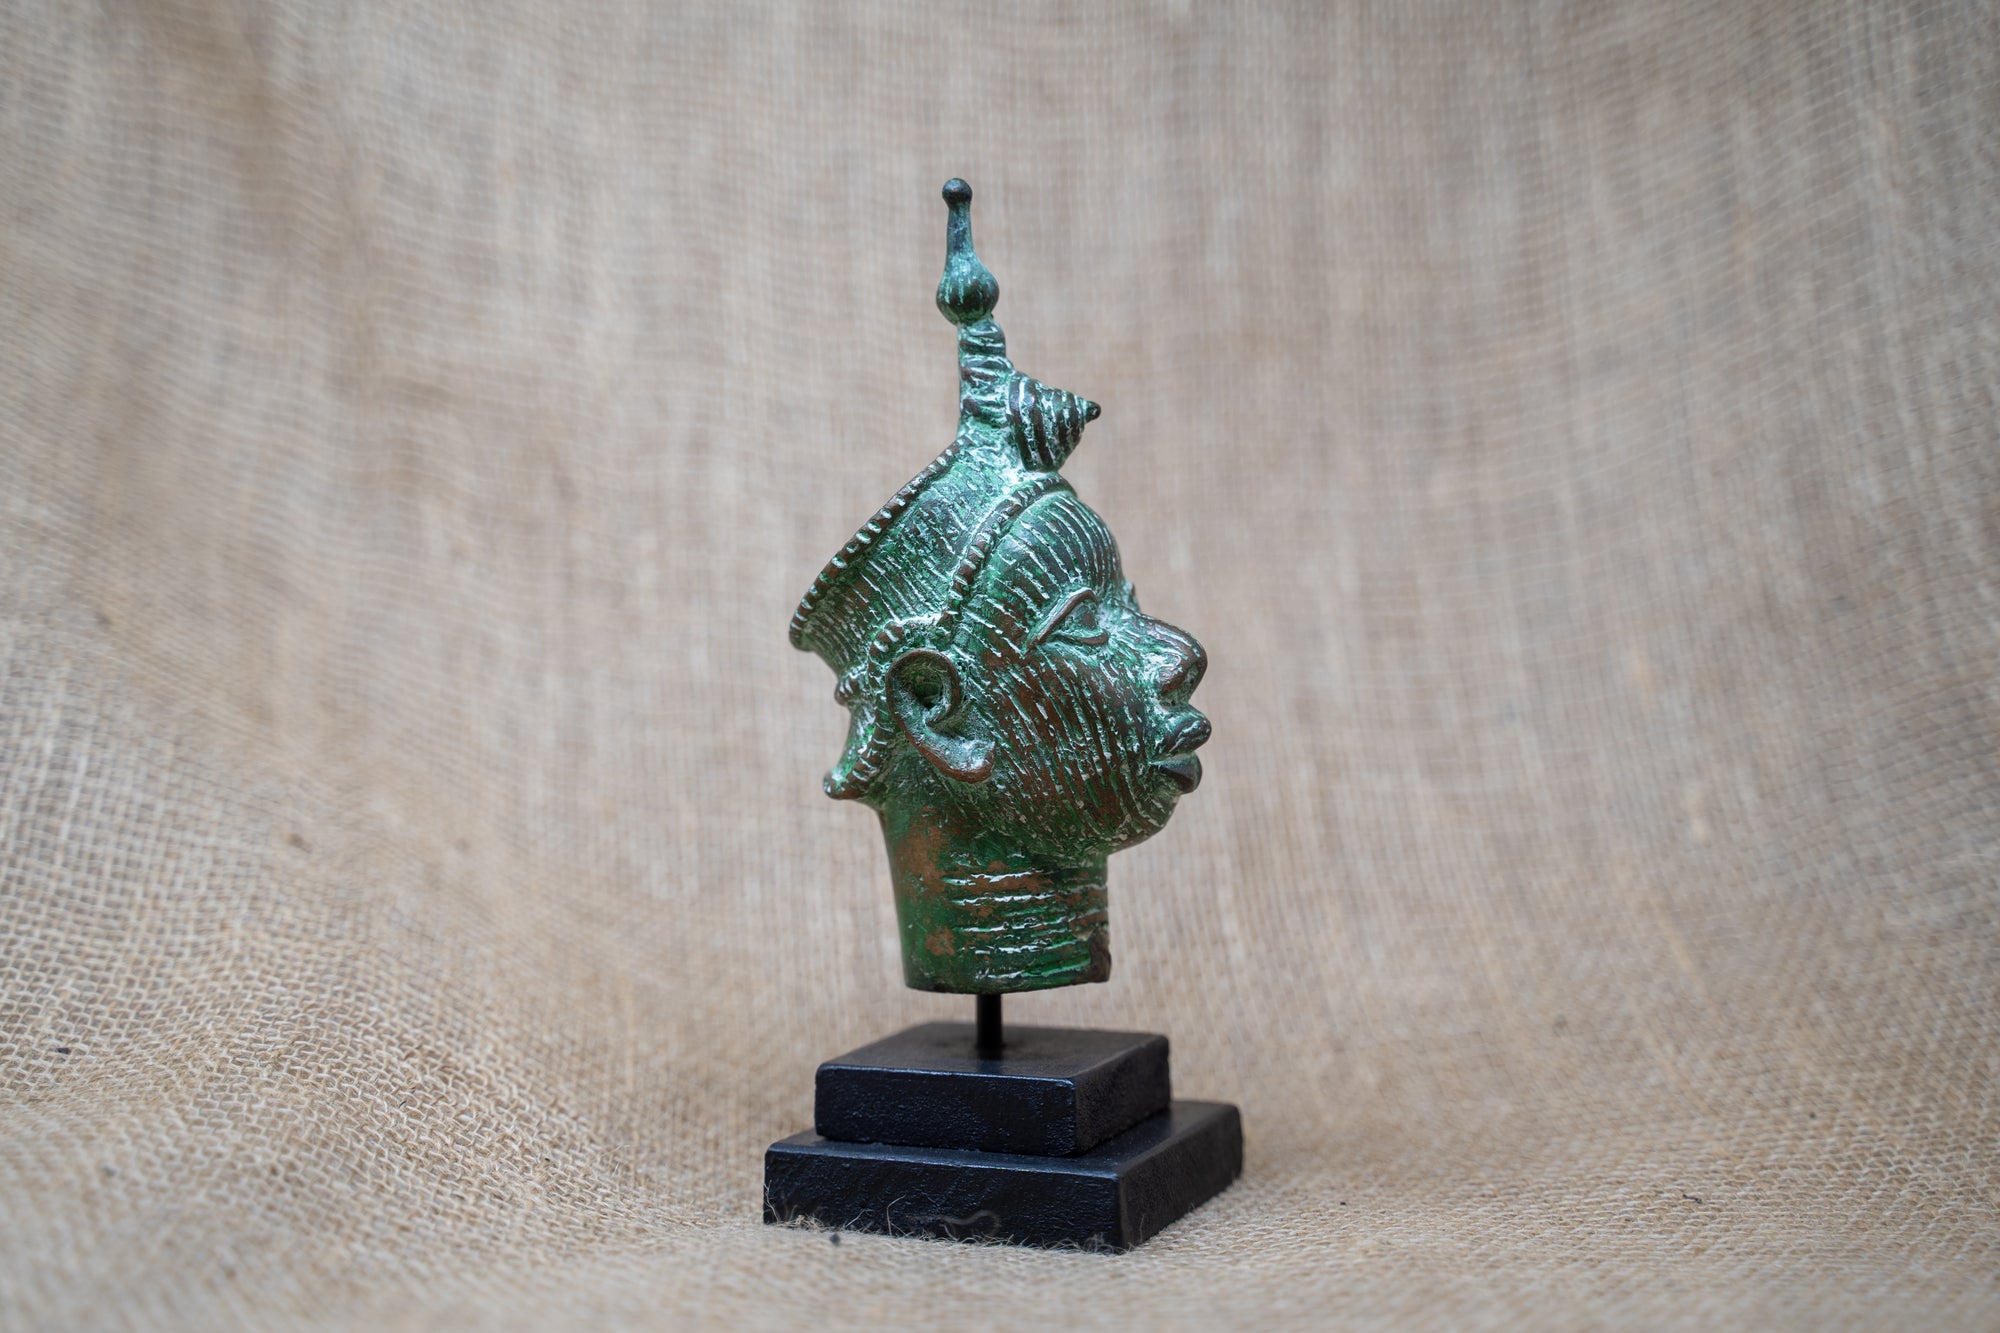 Benin Bronze Head - 37.6